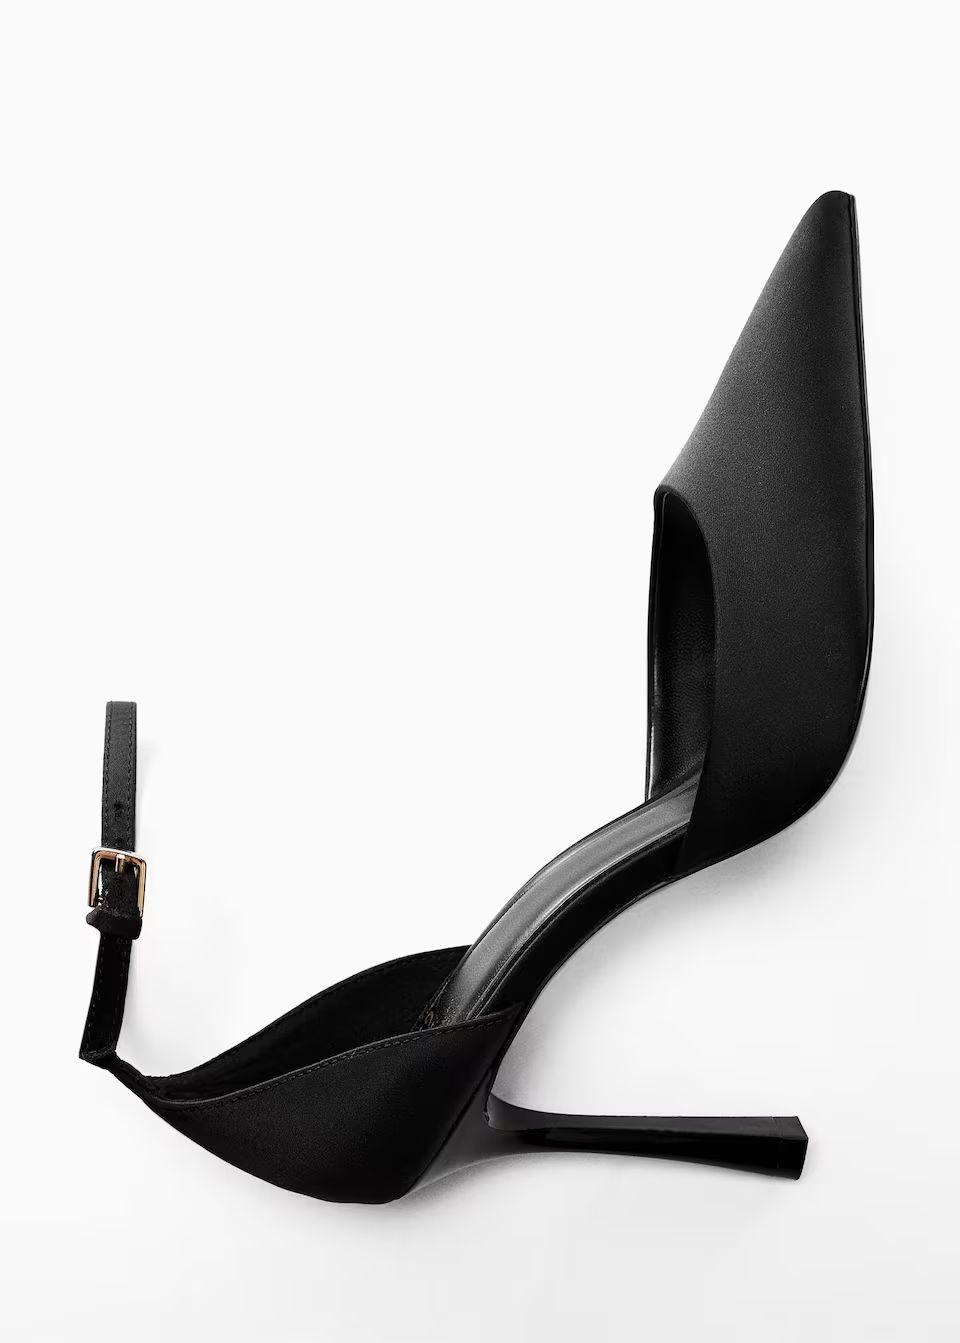 Recherche: Chaussures noir (89) | Mango France | MANGO (FR)